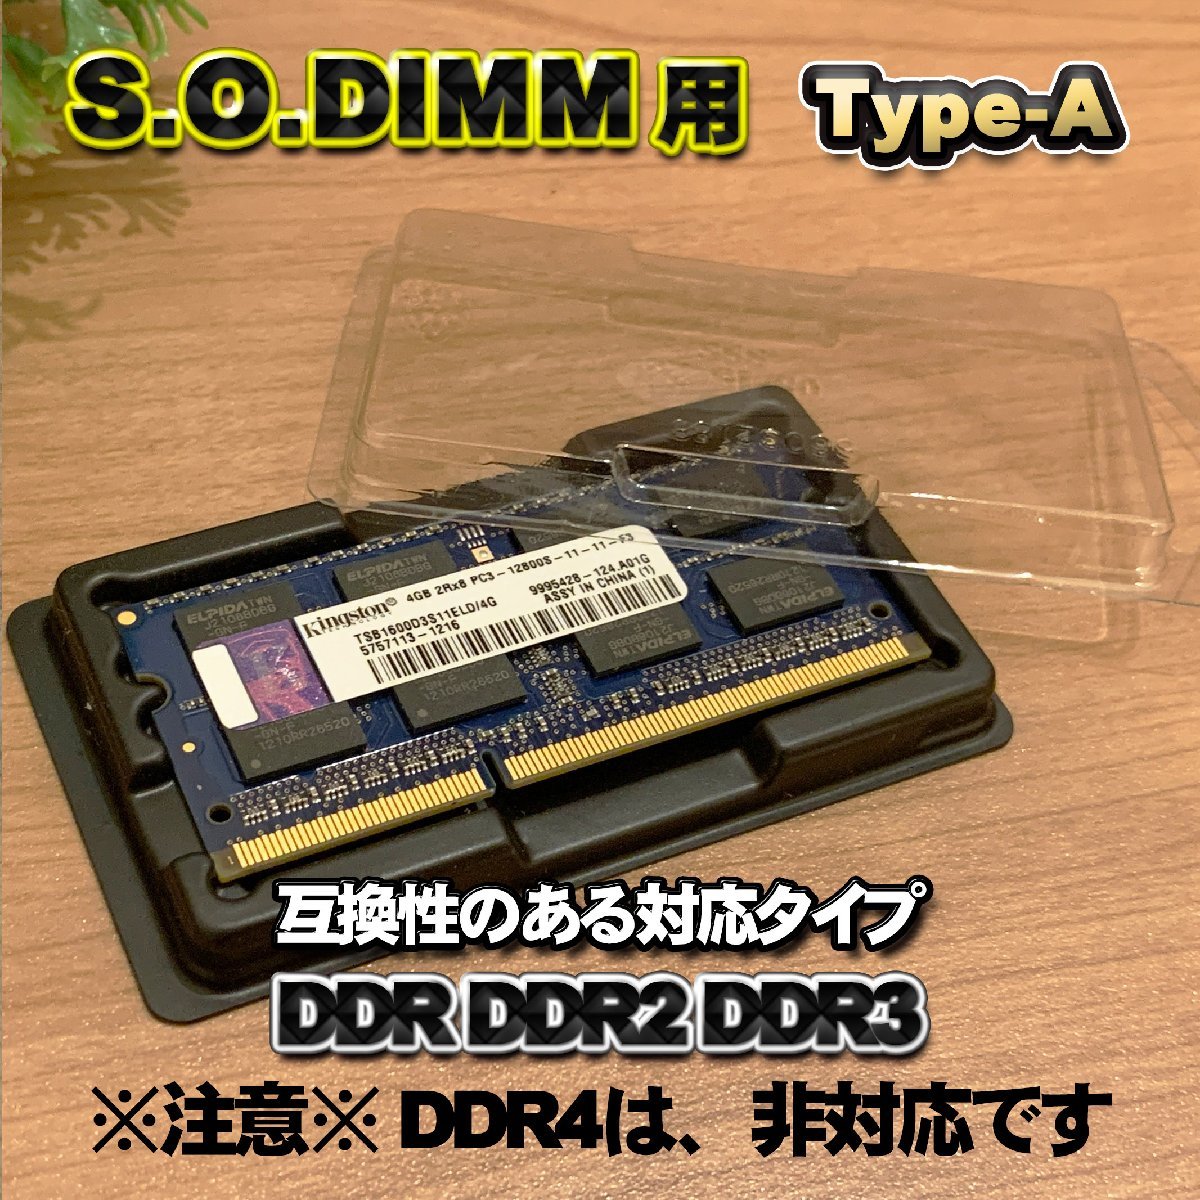 「Type-A」【 DDR2 対応 】蓋付き ノートPC メモリー シェルケース S.O.DIMM 用 プラスチック 保管 収納ケース 5枚セット_画像2